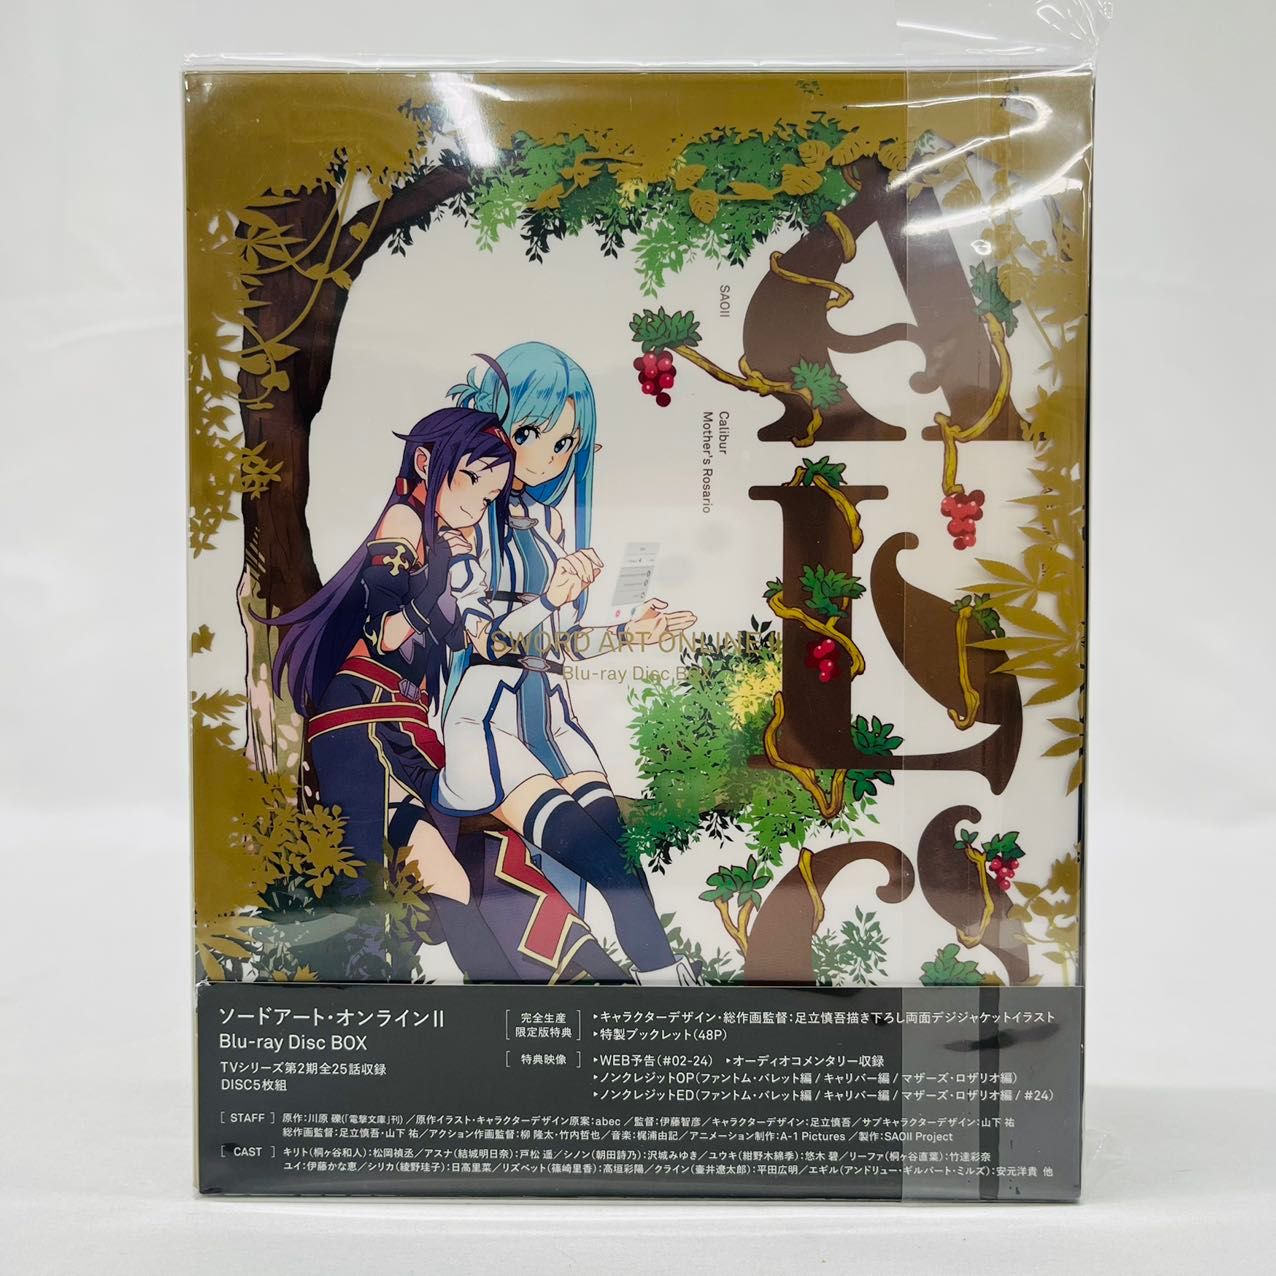 ソードアート・オンラインII Blu-ray Disc BOX(完全生産限定版) - アニメ